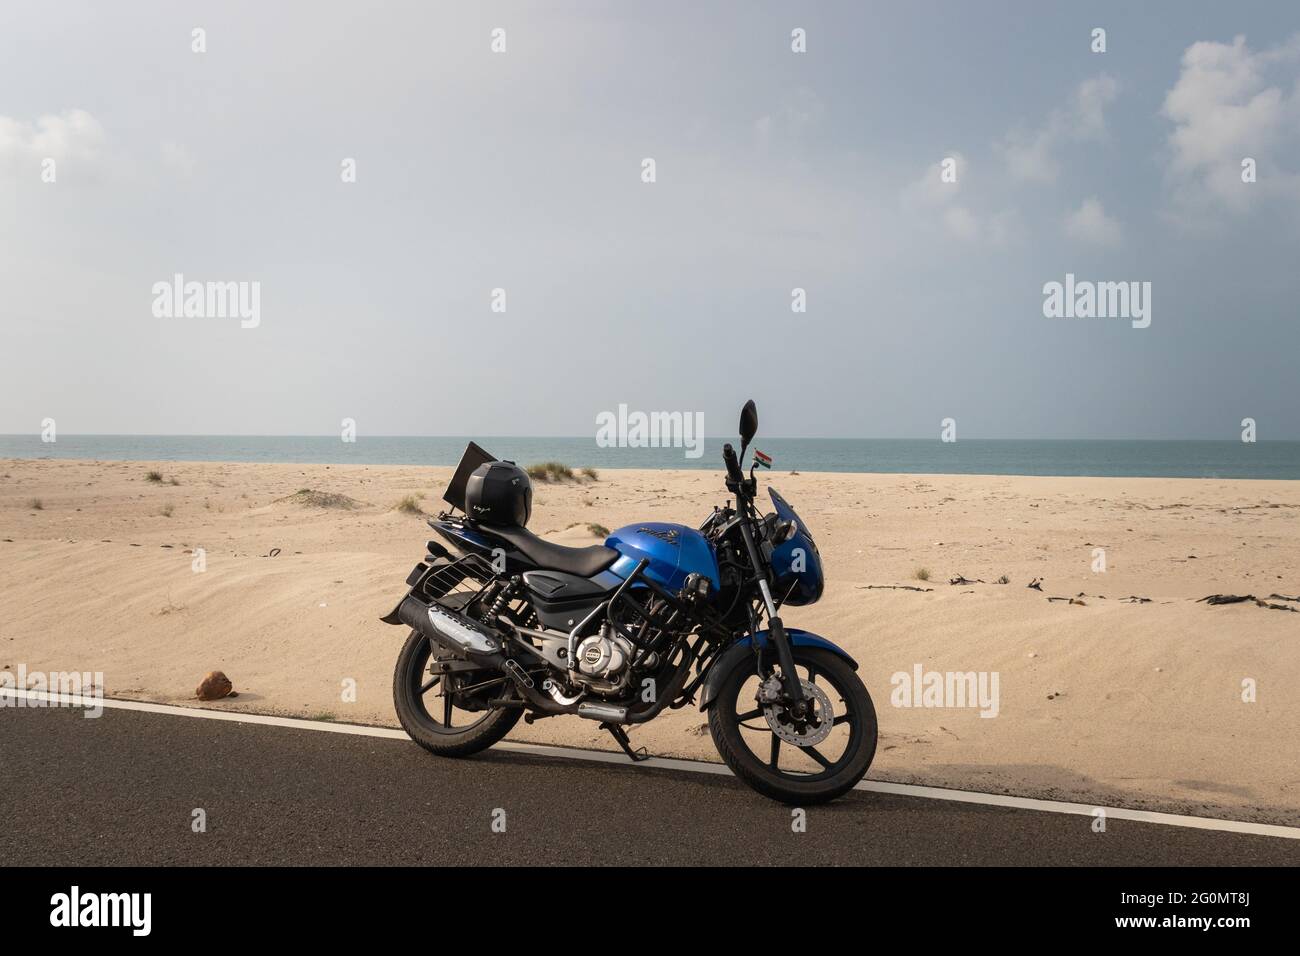 Das isolierte Motorrad, das auf der Teerstraße an der Küste steht, wurde am 17 2019. April in Dhanushkodi rameswaram tamilnadu india aufgenommen. Es ist Showin Stockfoto